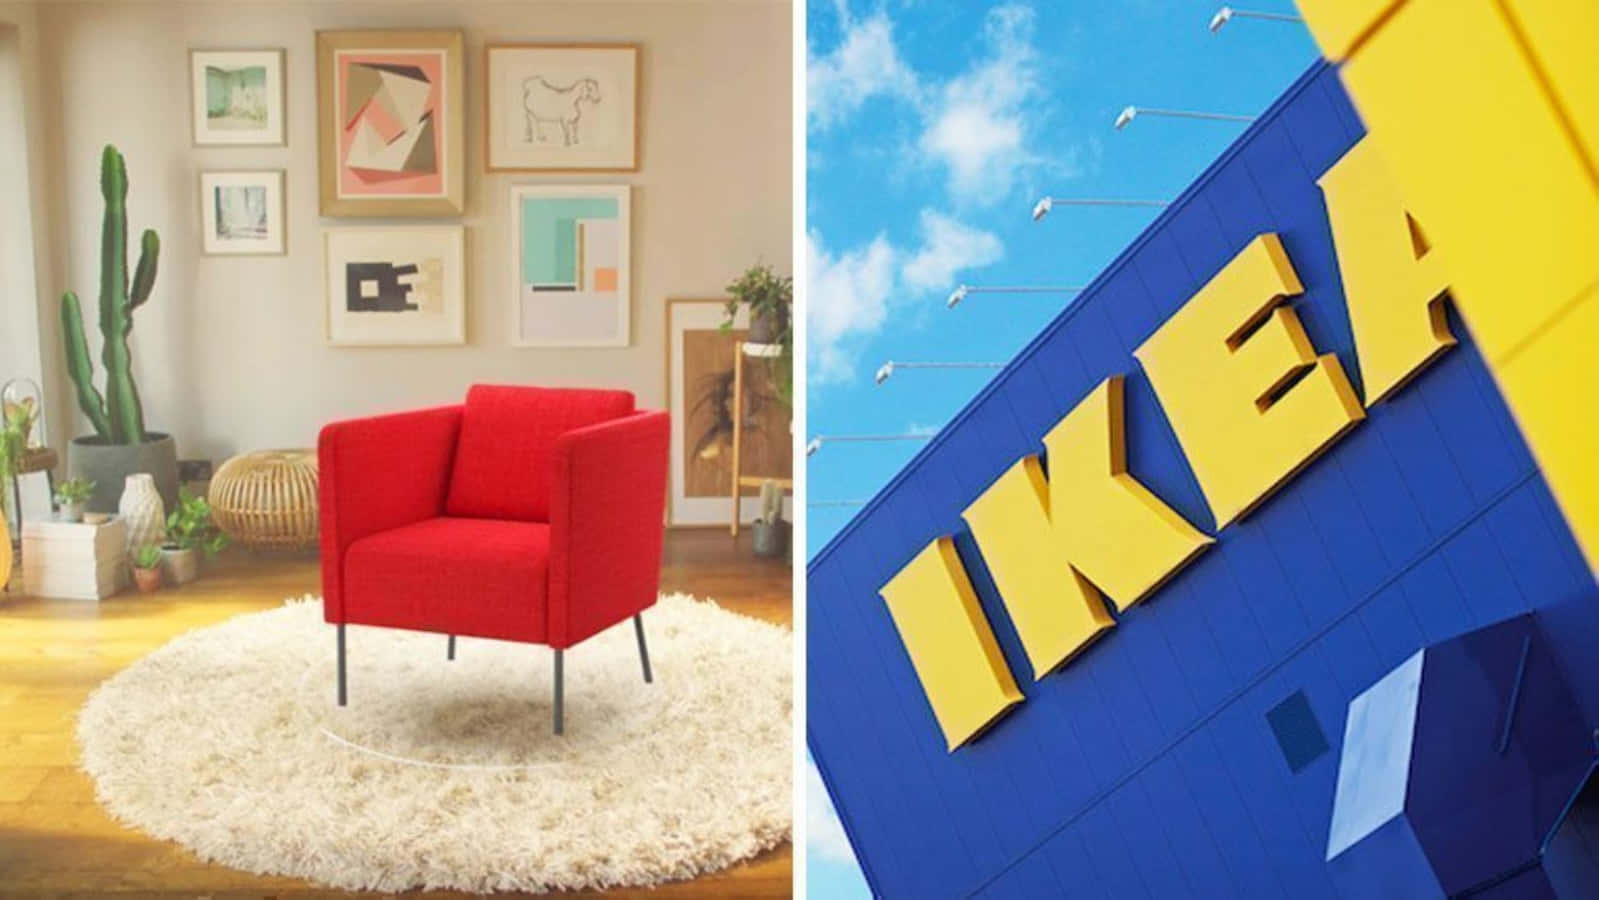 Hållordning Med Hjälp Av Ikea!